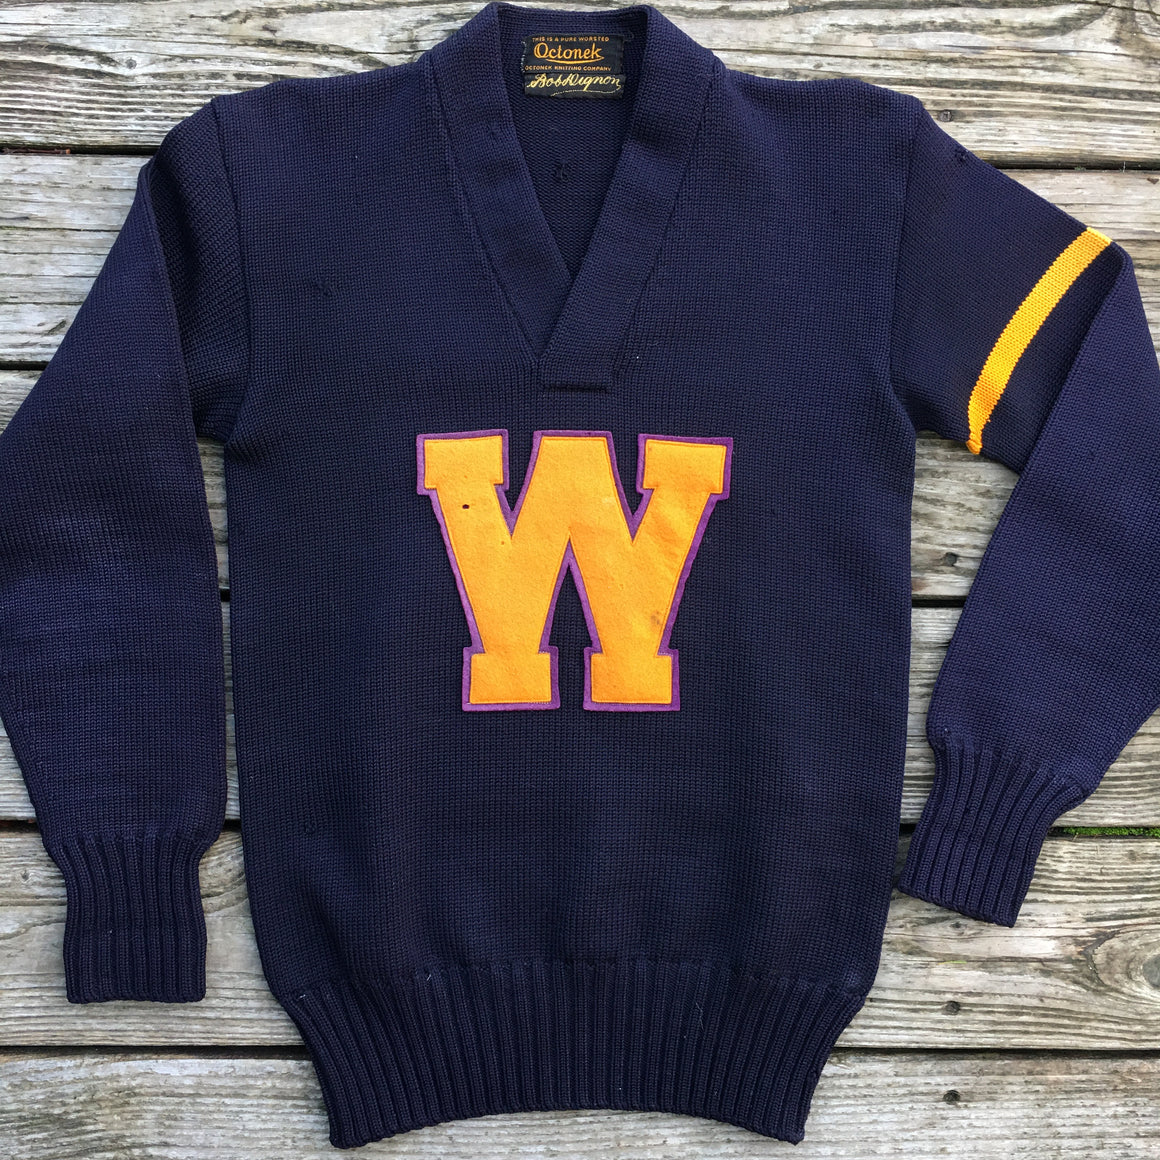 Washington Huskies Letter Sweater - S / M Tall